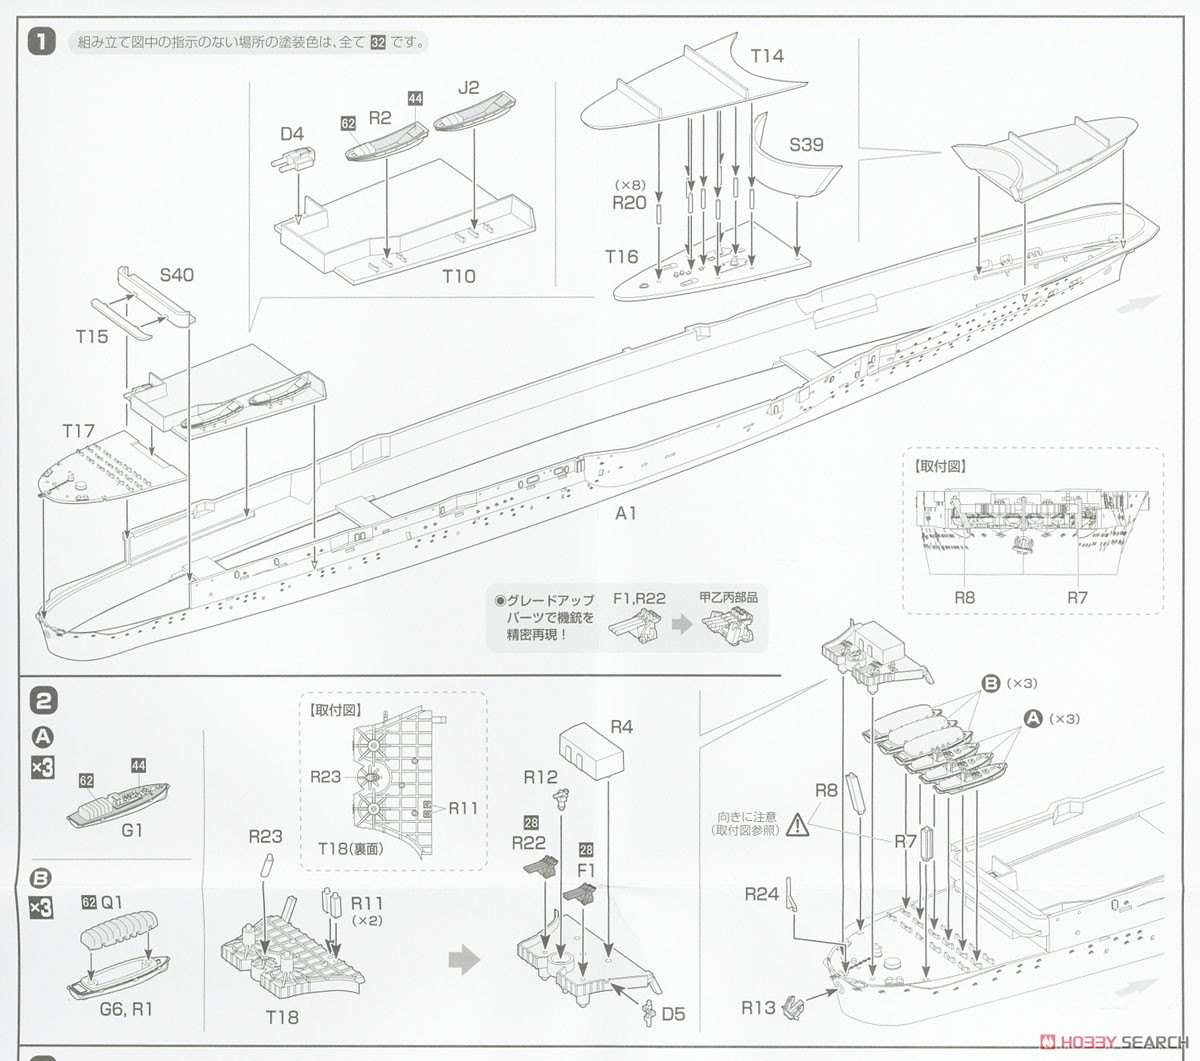 日本海軍航空母艦 大鳳 (木甲板仕様) フルハルモデル (プラモデル) 設計図1